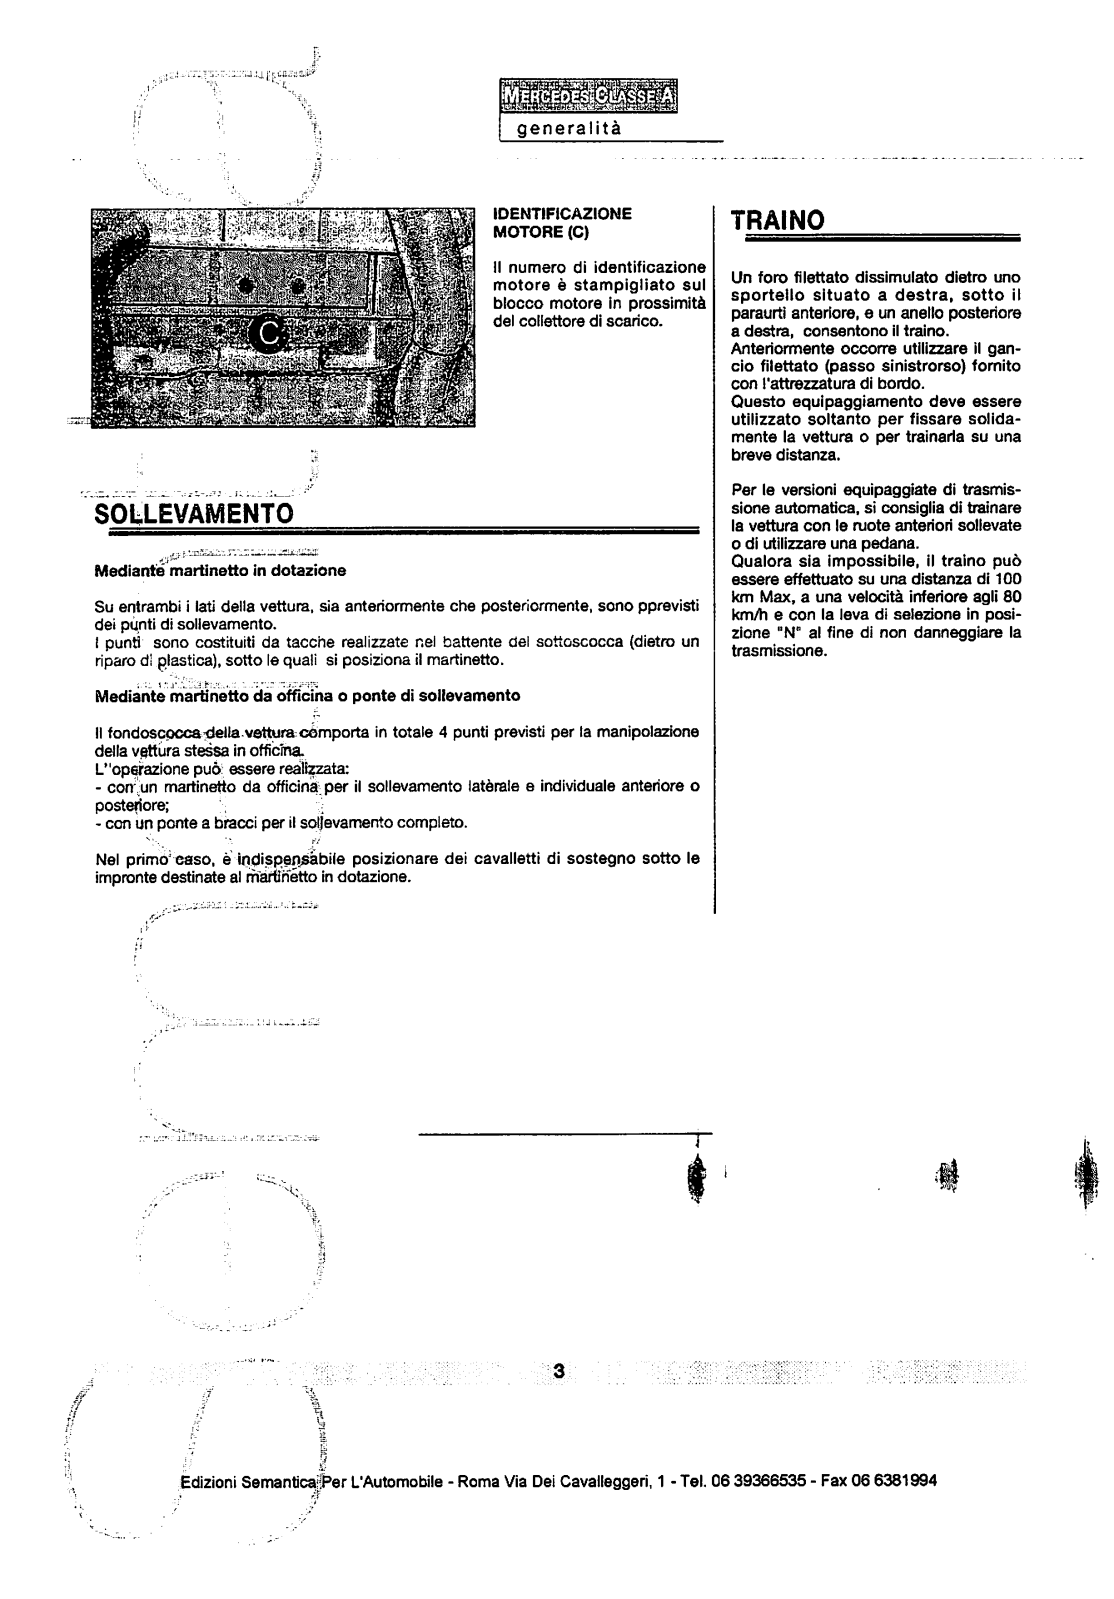 w168 - (W168): Manual técnico - tudo sobre - 1997 a 2004 - italiano Iz6t5y